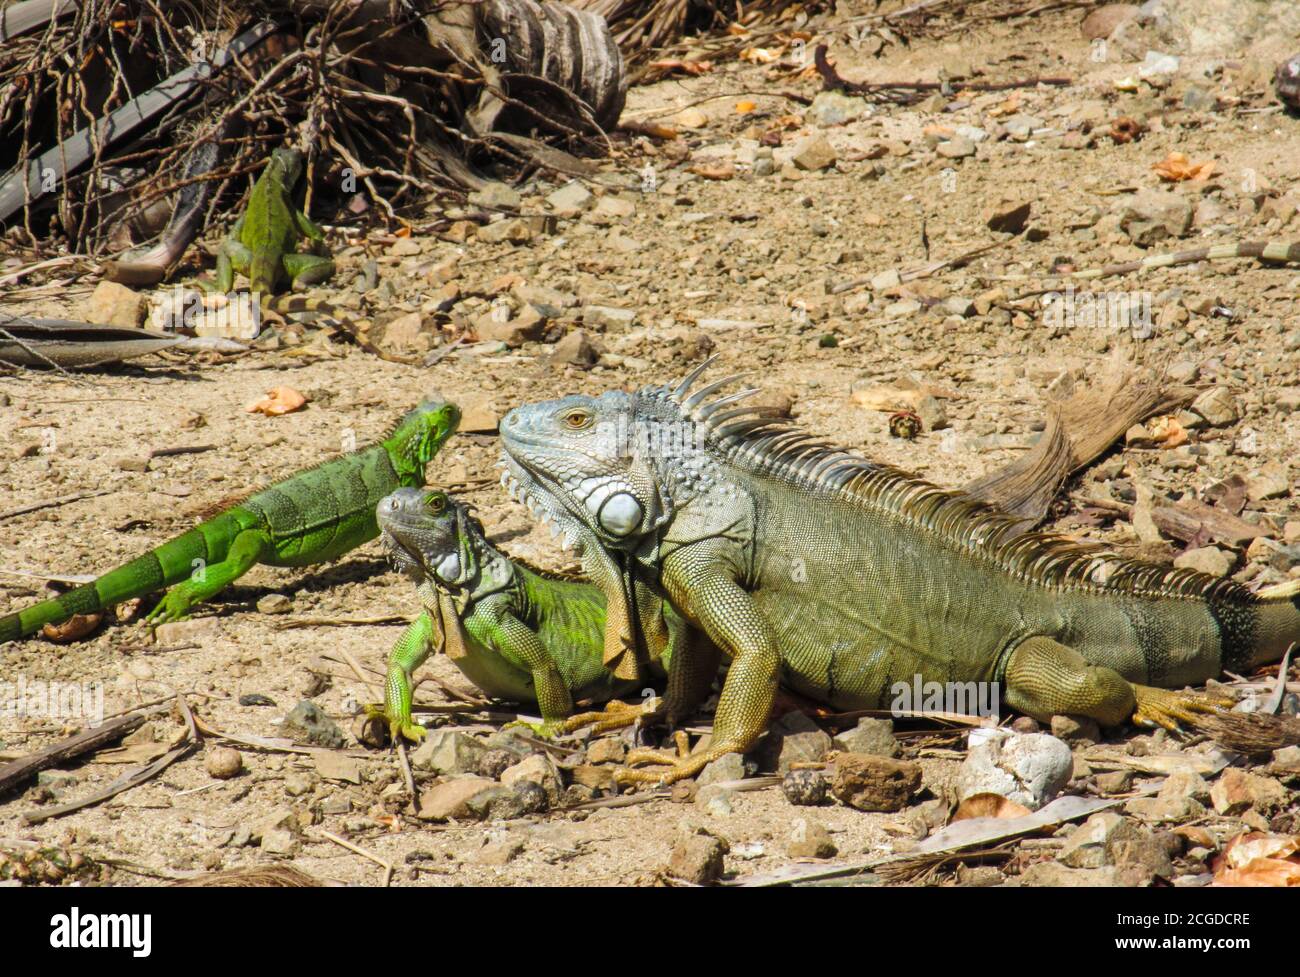 Rencontre d'iguanes verts sur un sol rocailleux et aride Banque D'Images